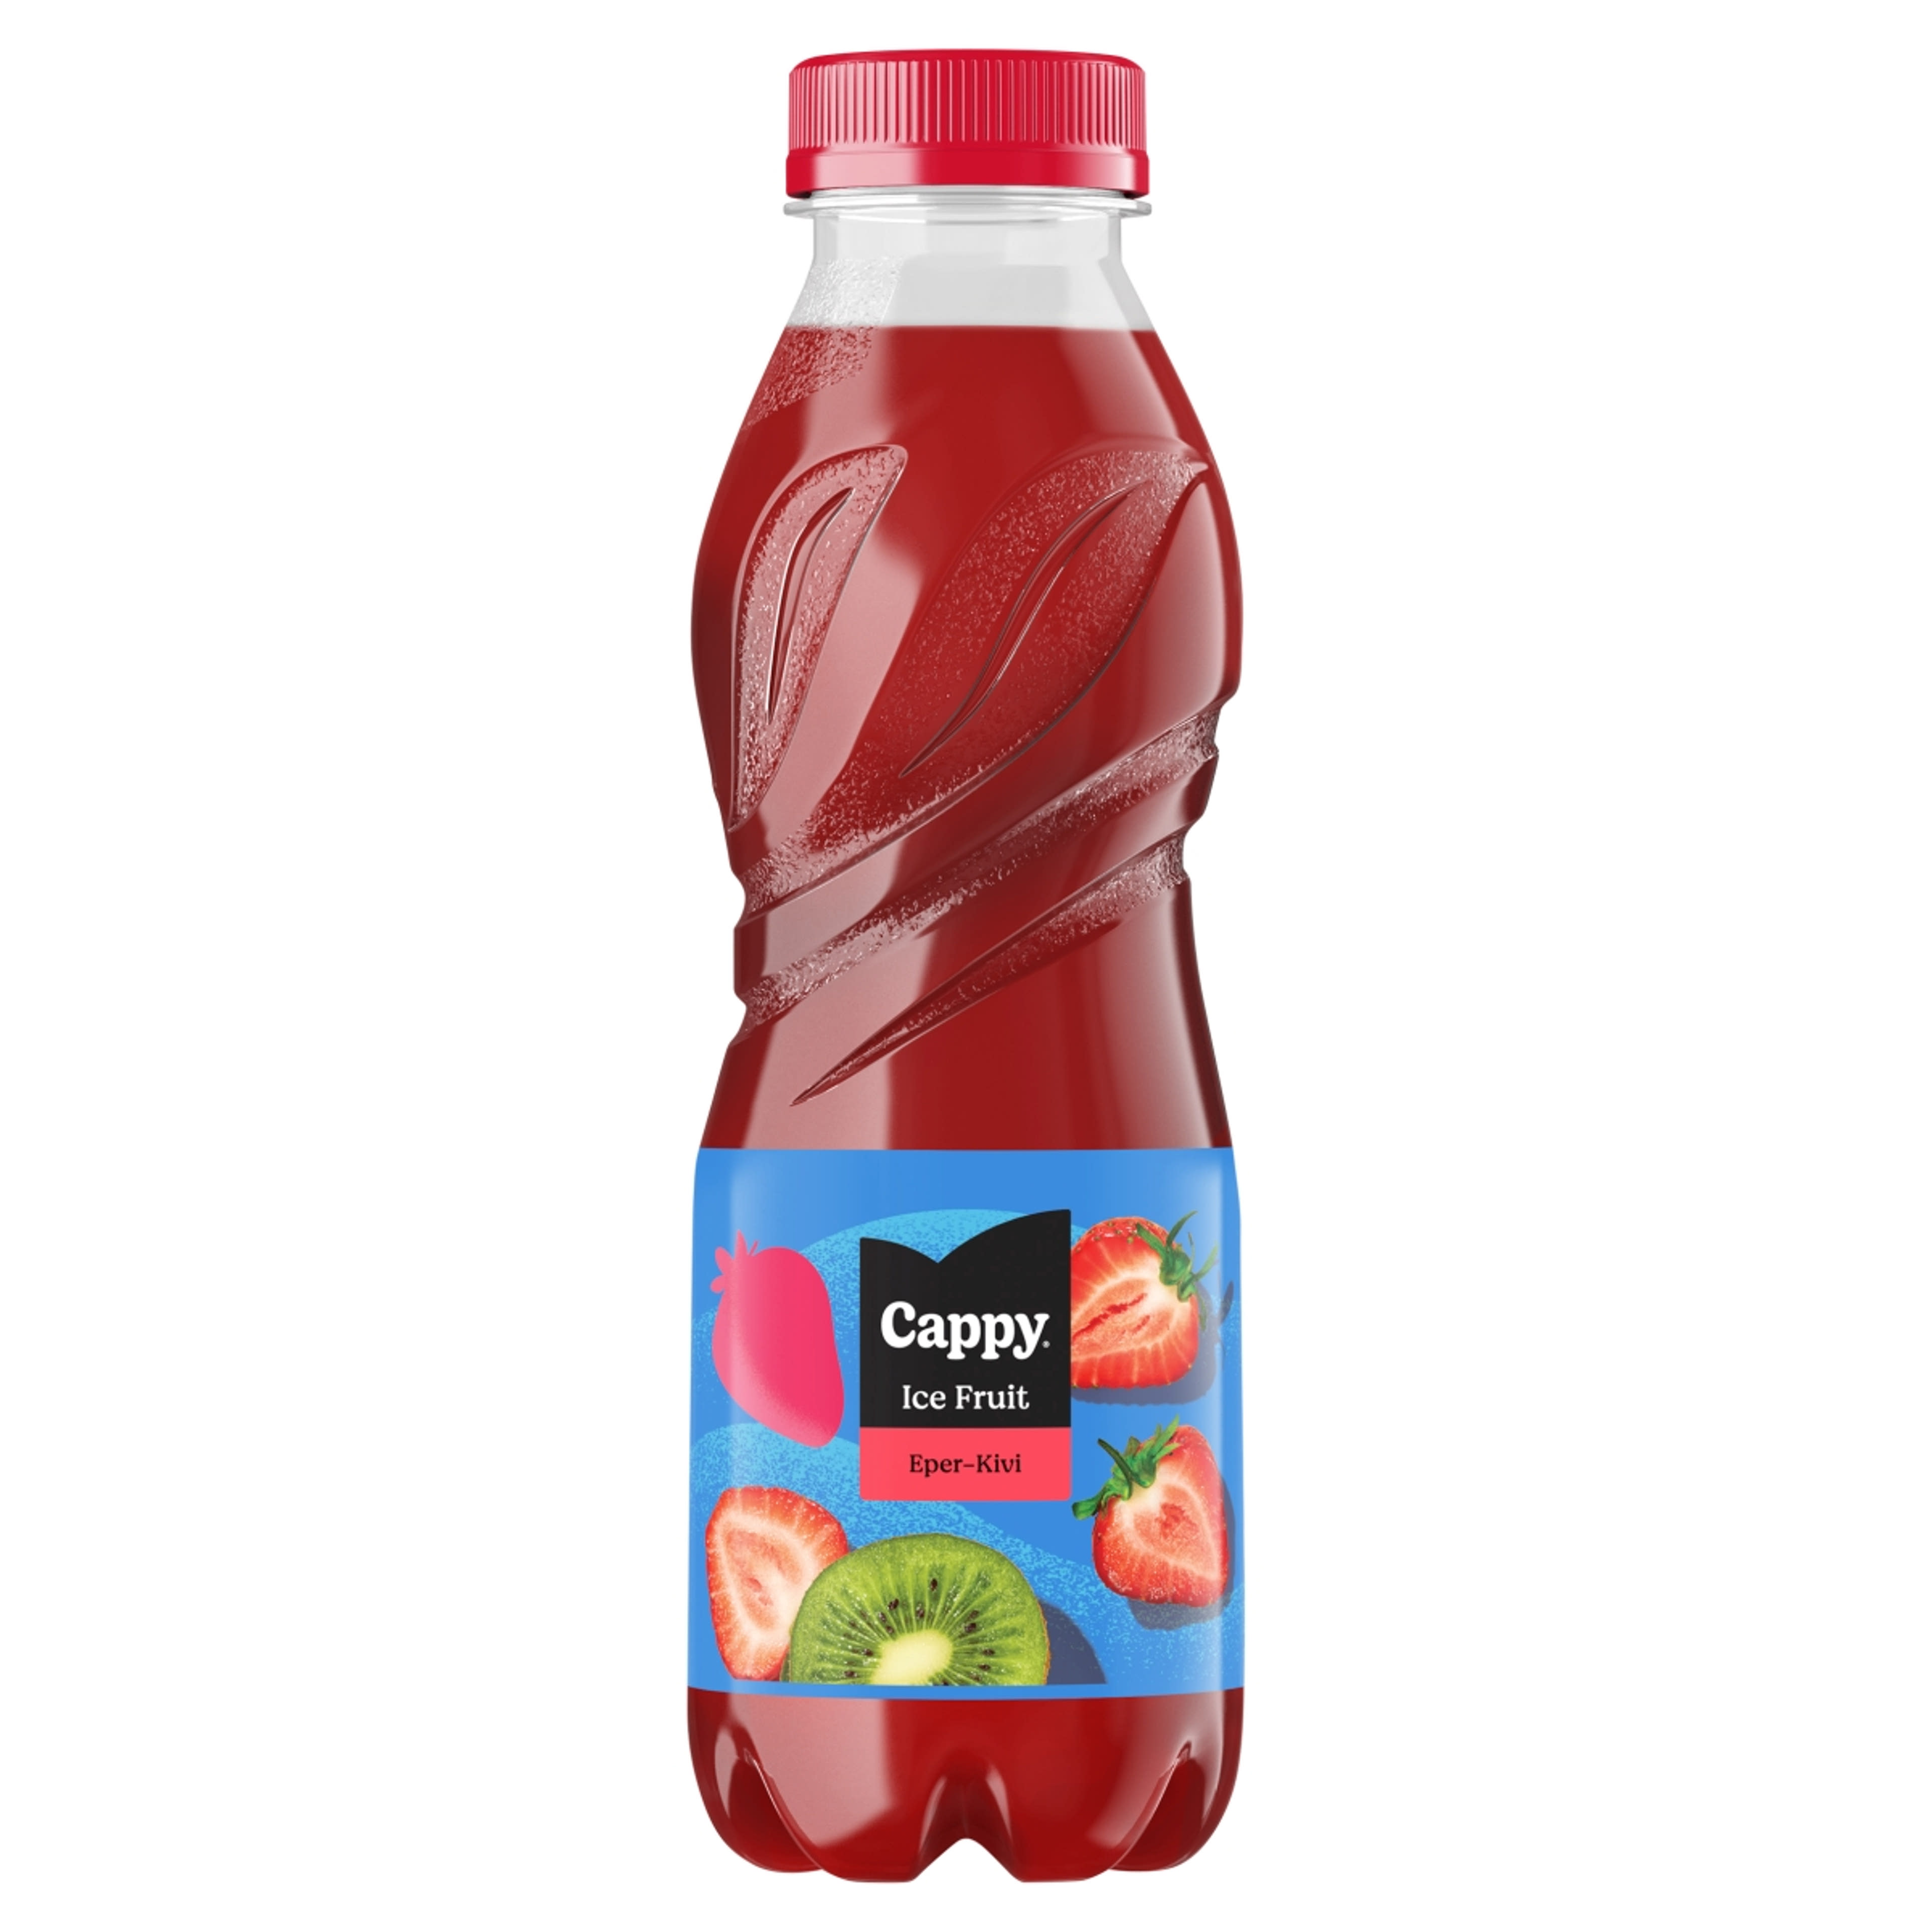 Cappy Ice Fruit üdítőital eper-kivi ízesítéssel - 500 ml